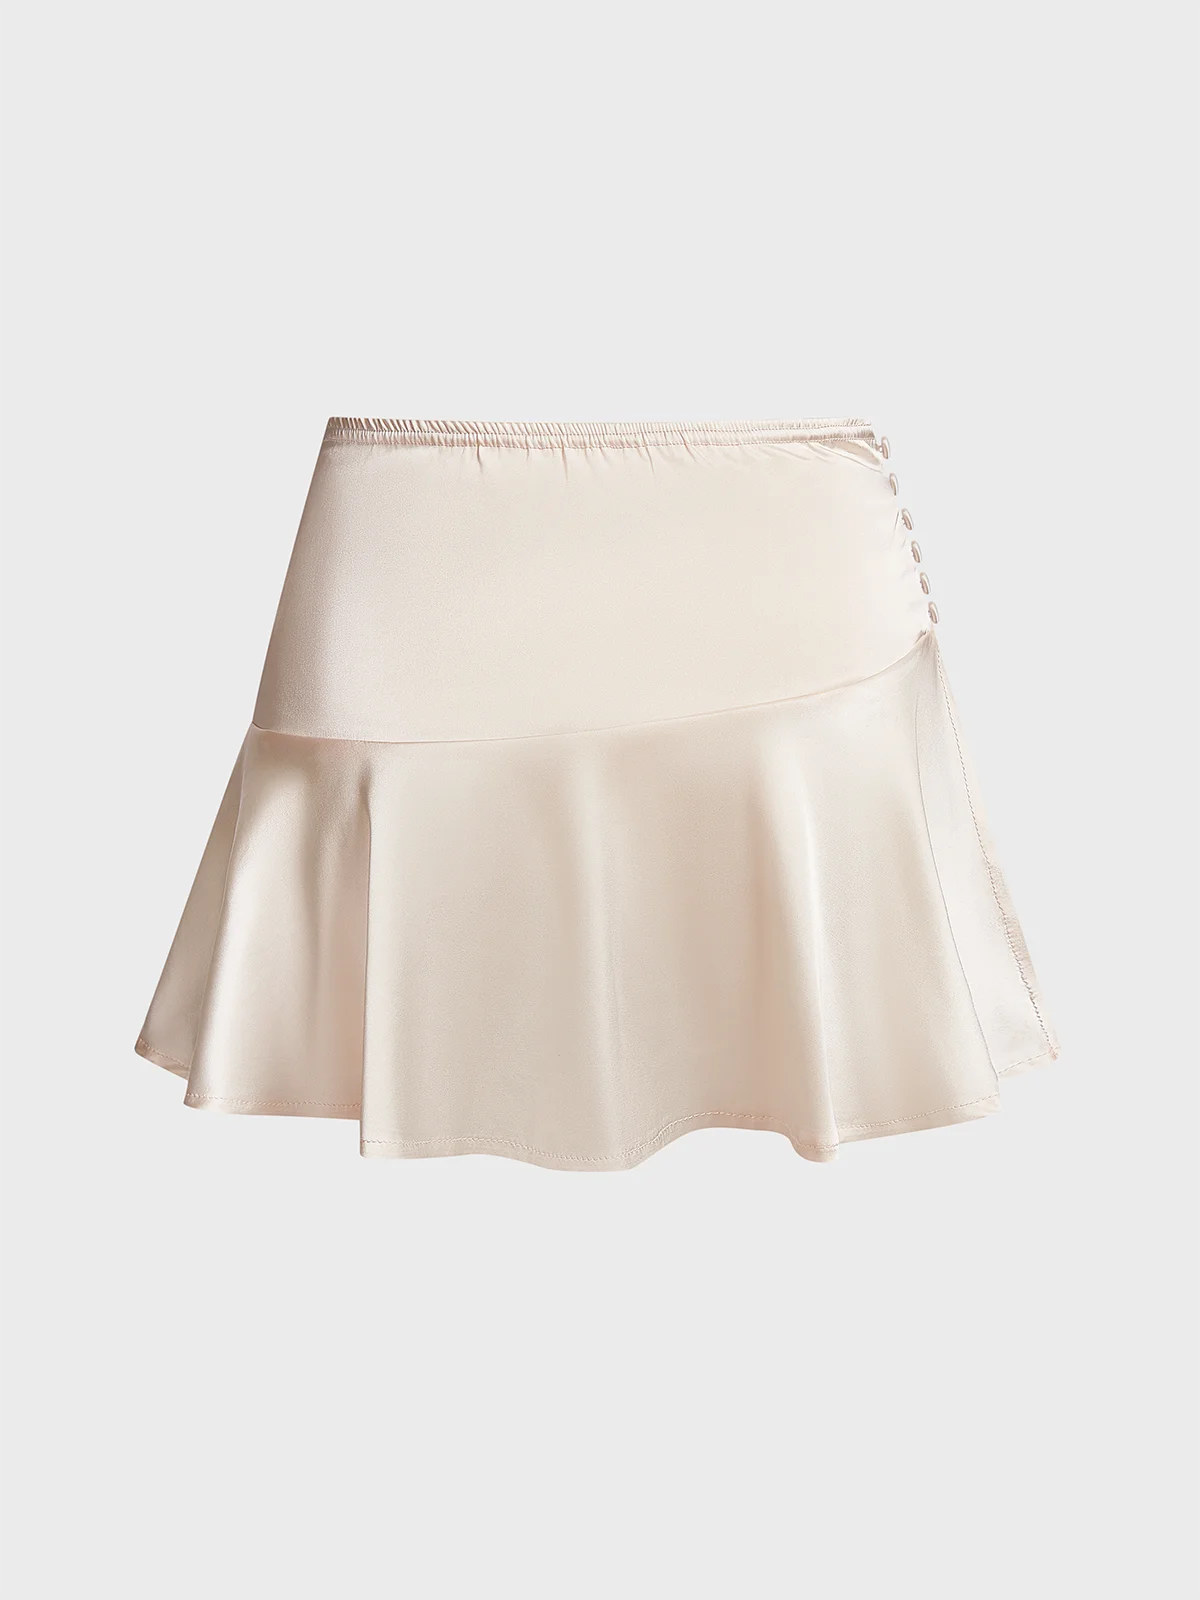 Satin side slit Plain Short Skirt